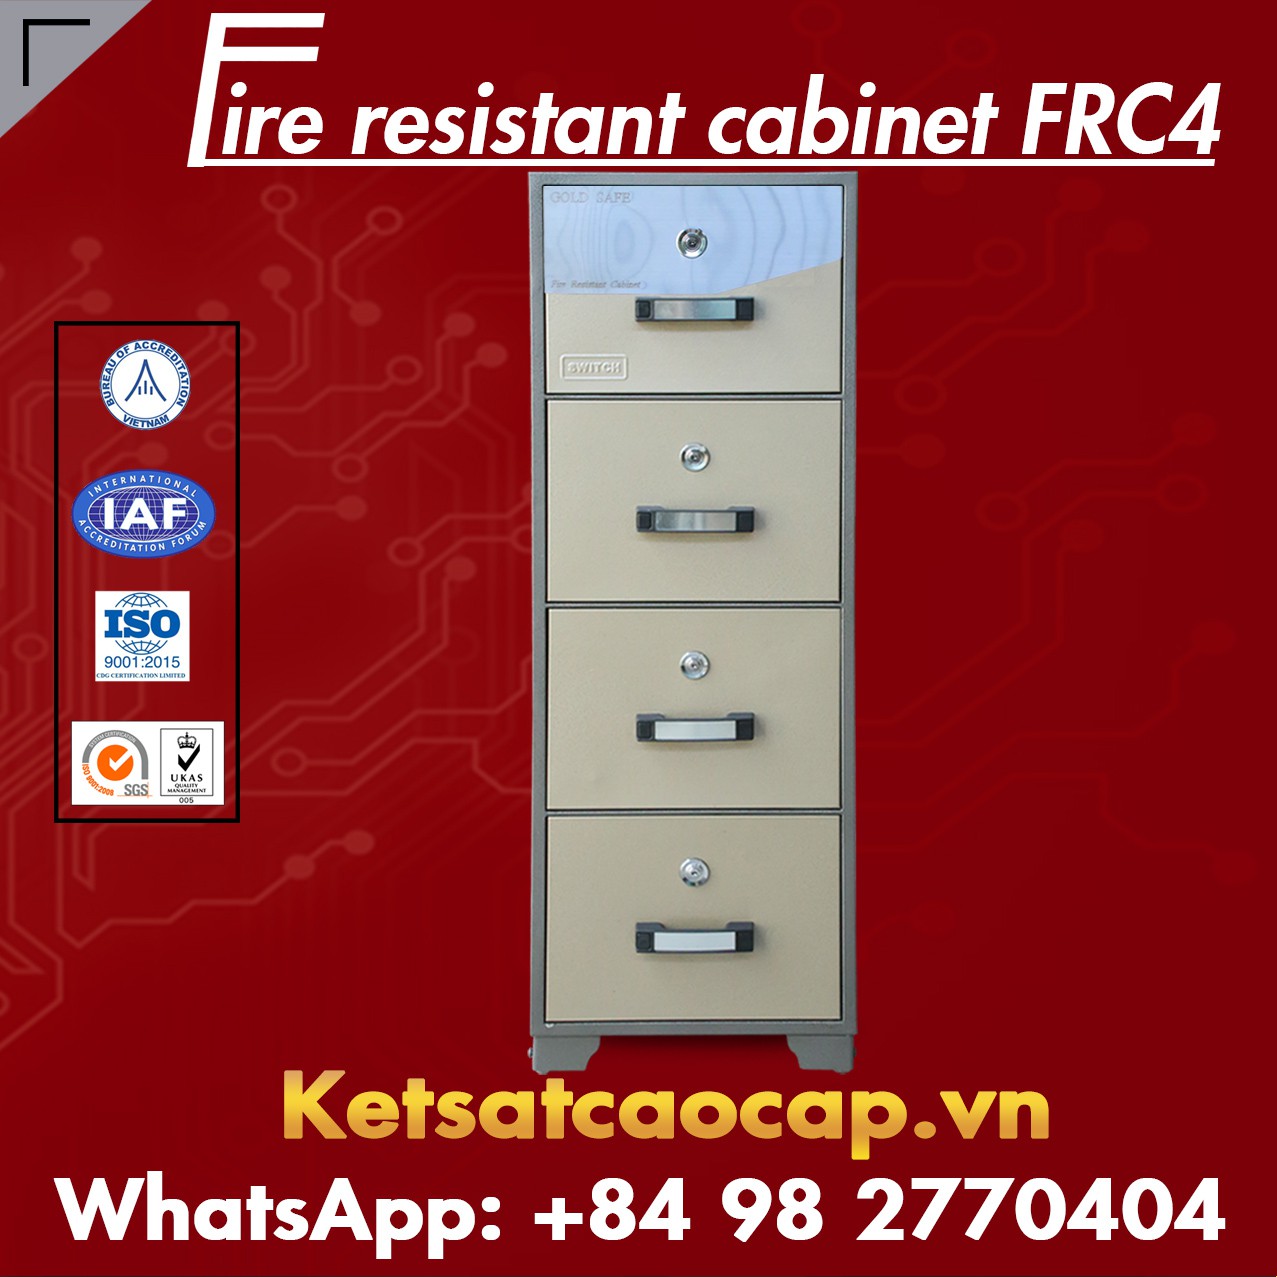 Đại Lý Uỷ Quyền Tủ Đựng Tài Liệu Chống Cháy FRC4